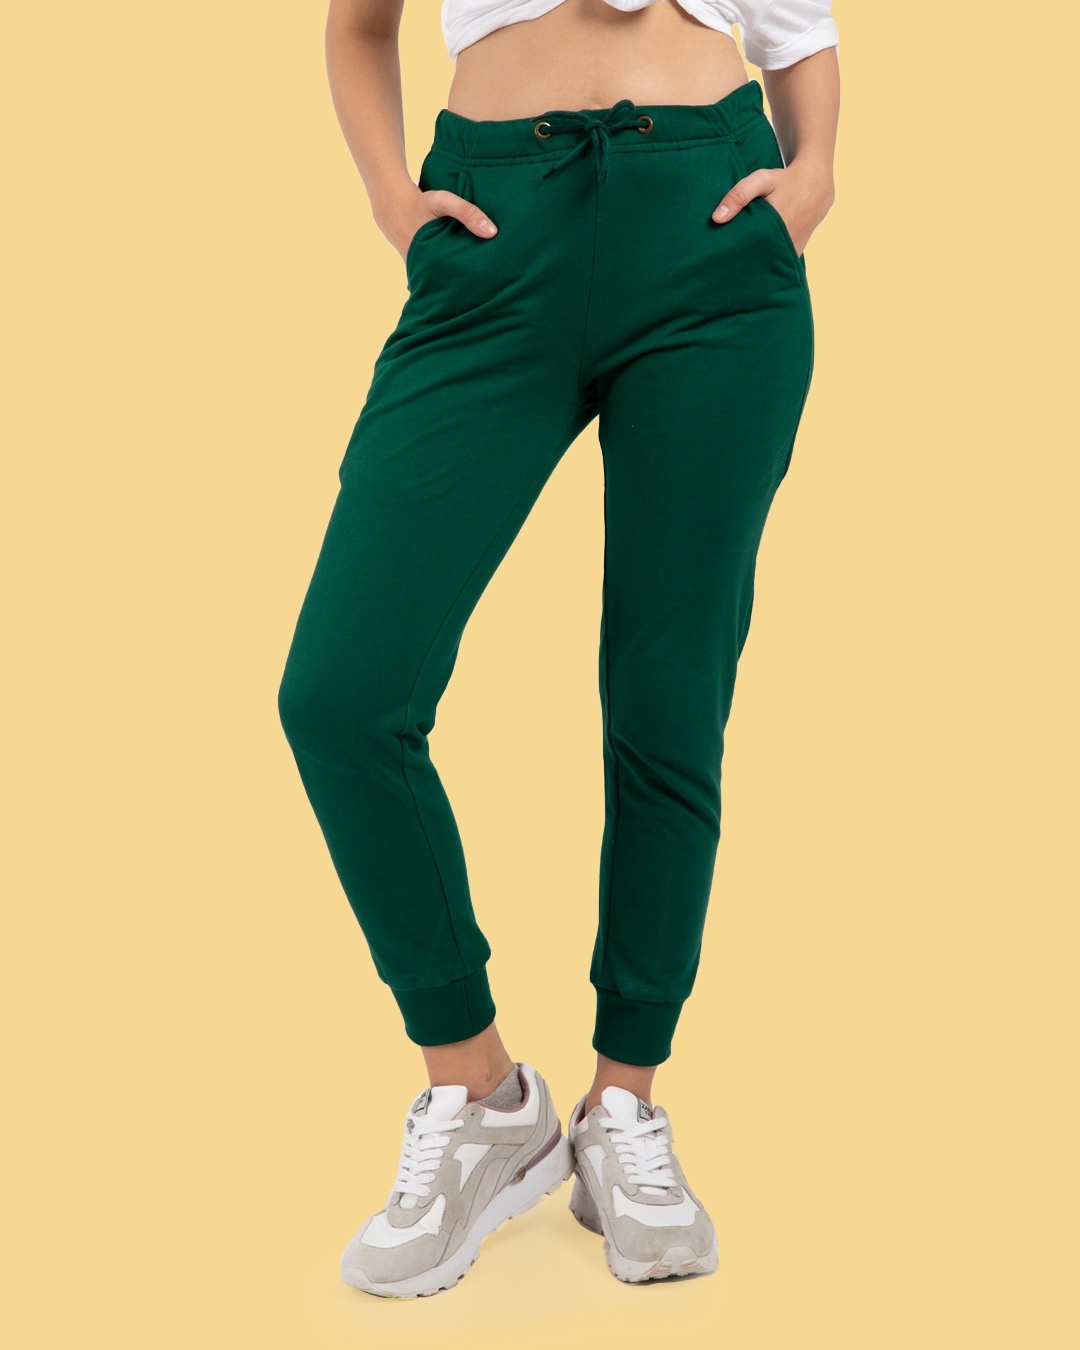 Buy Women's Green Joggers Online at Bewakoof